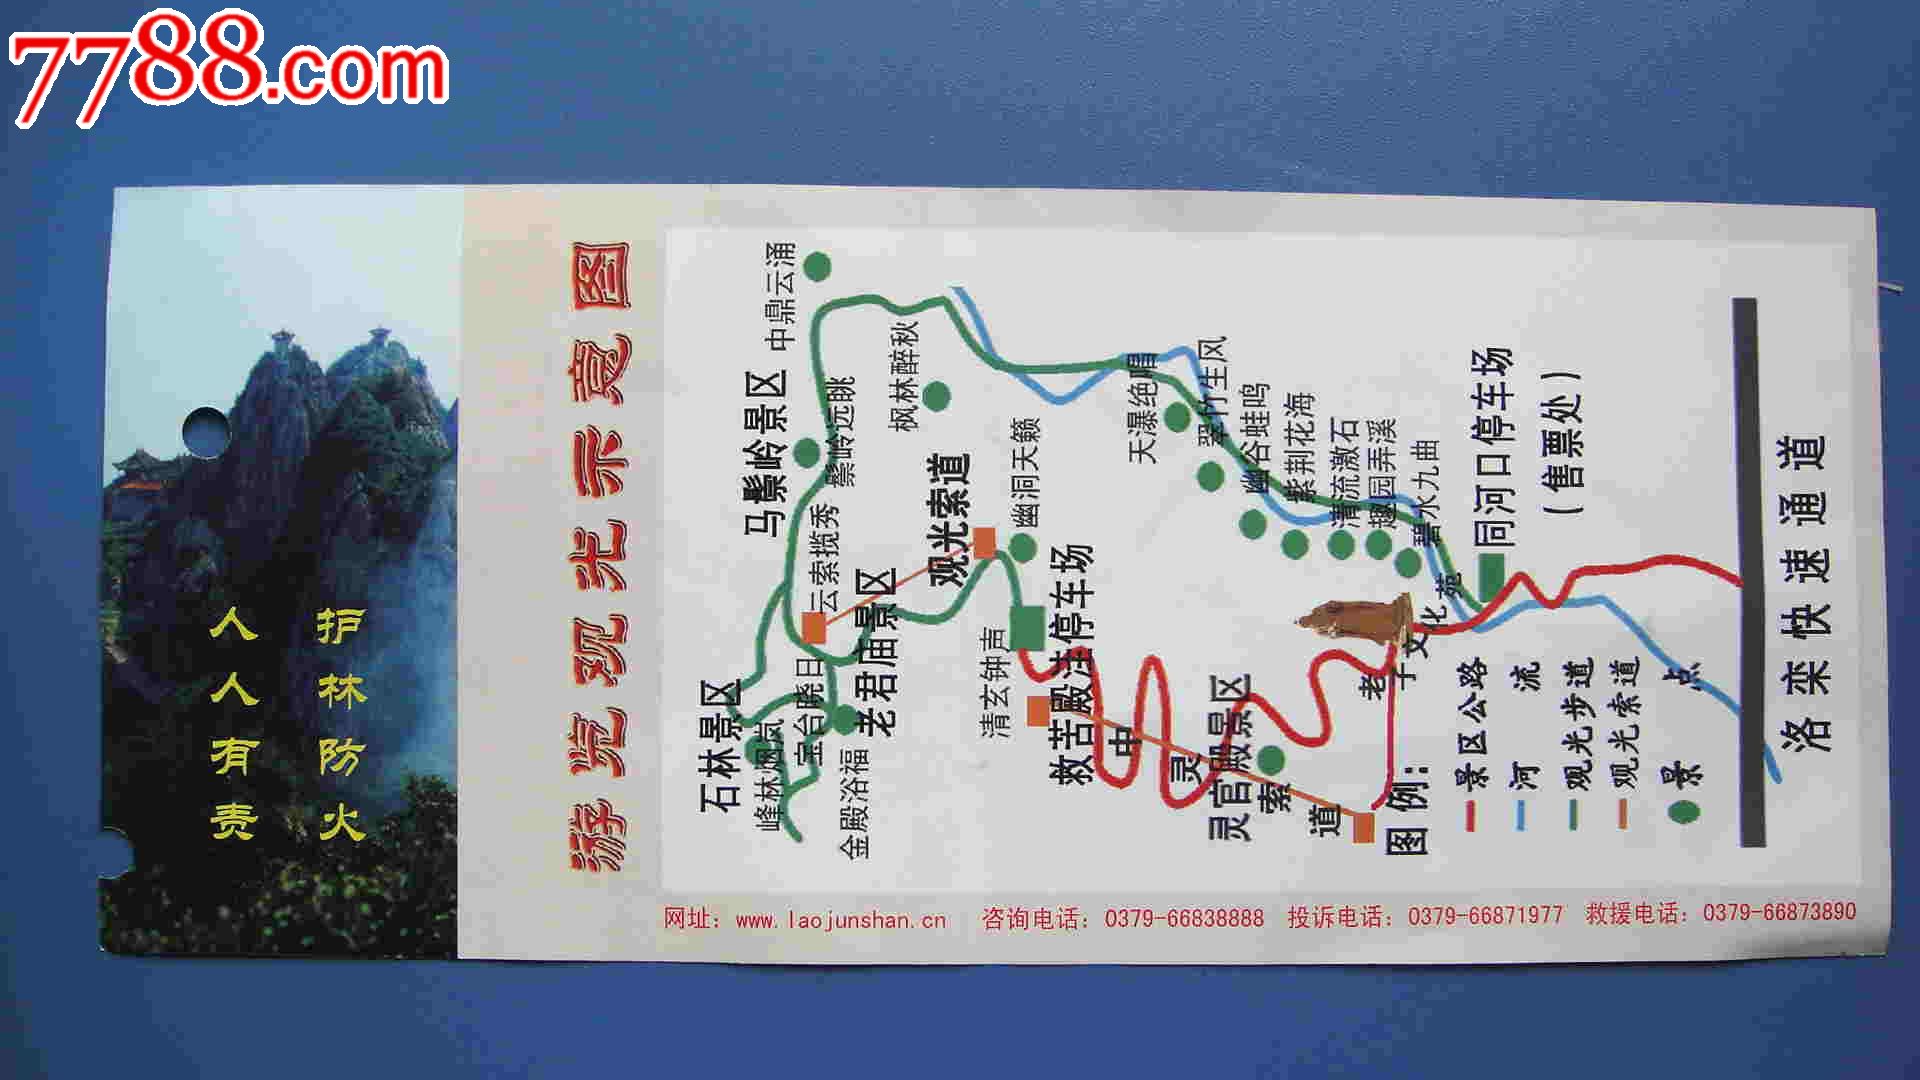 北京老山森林公园门票图片